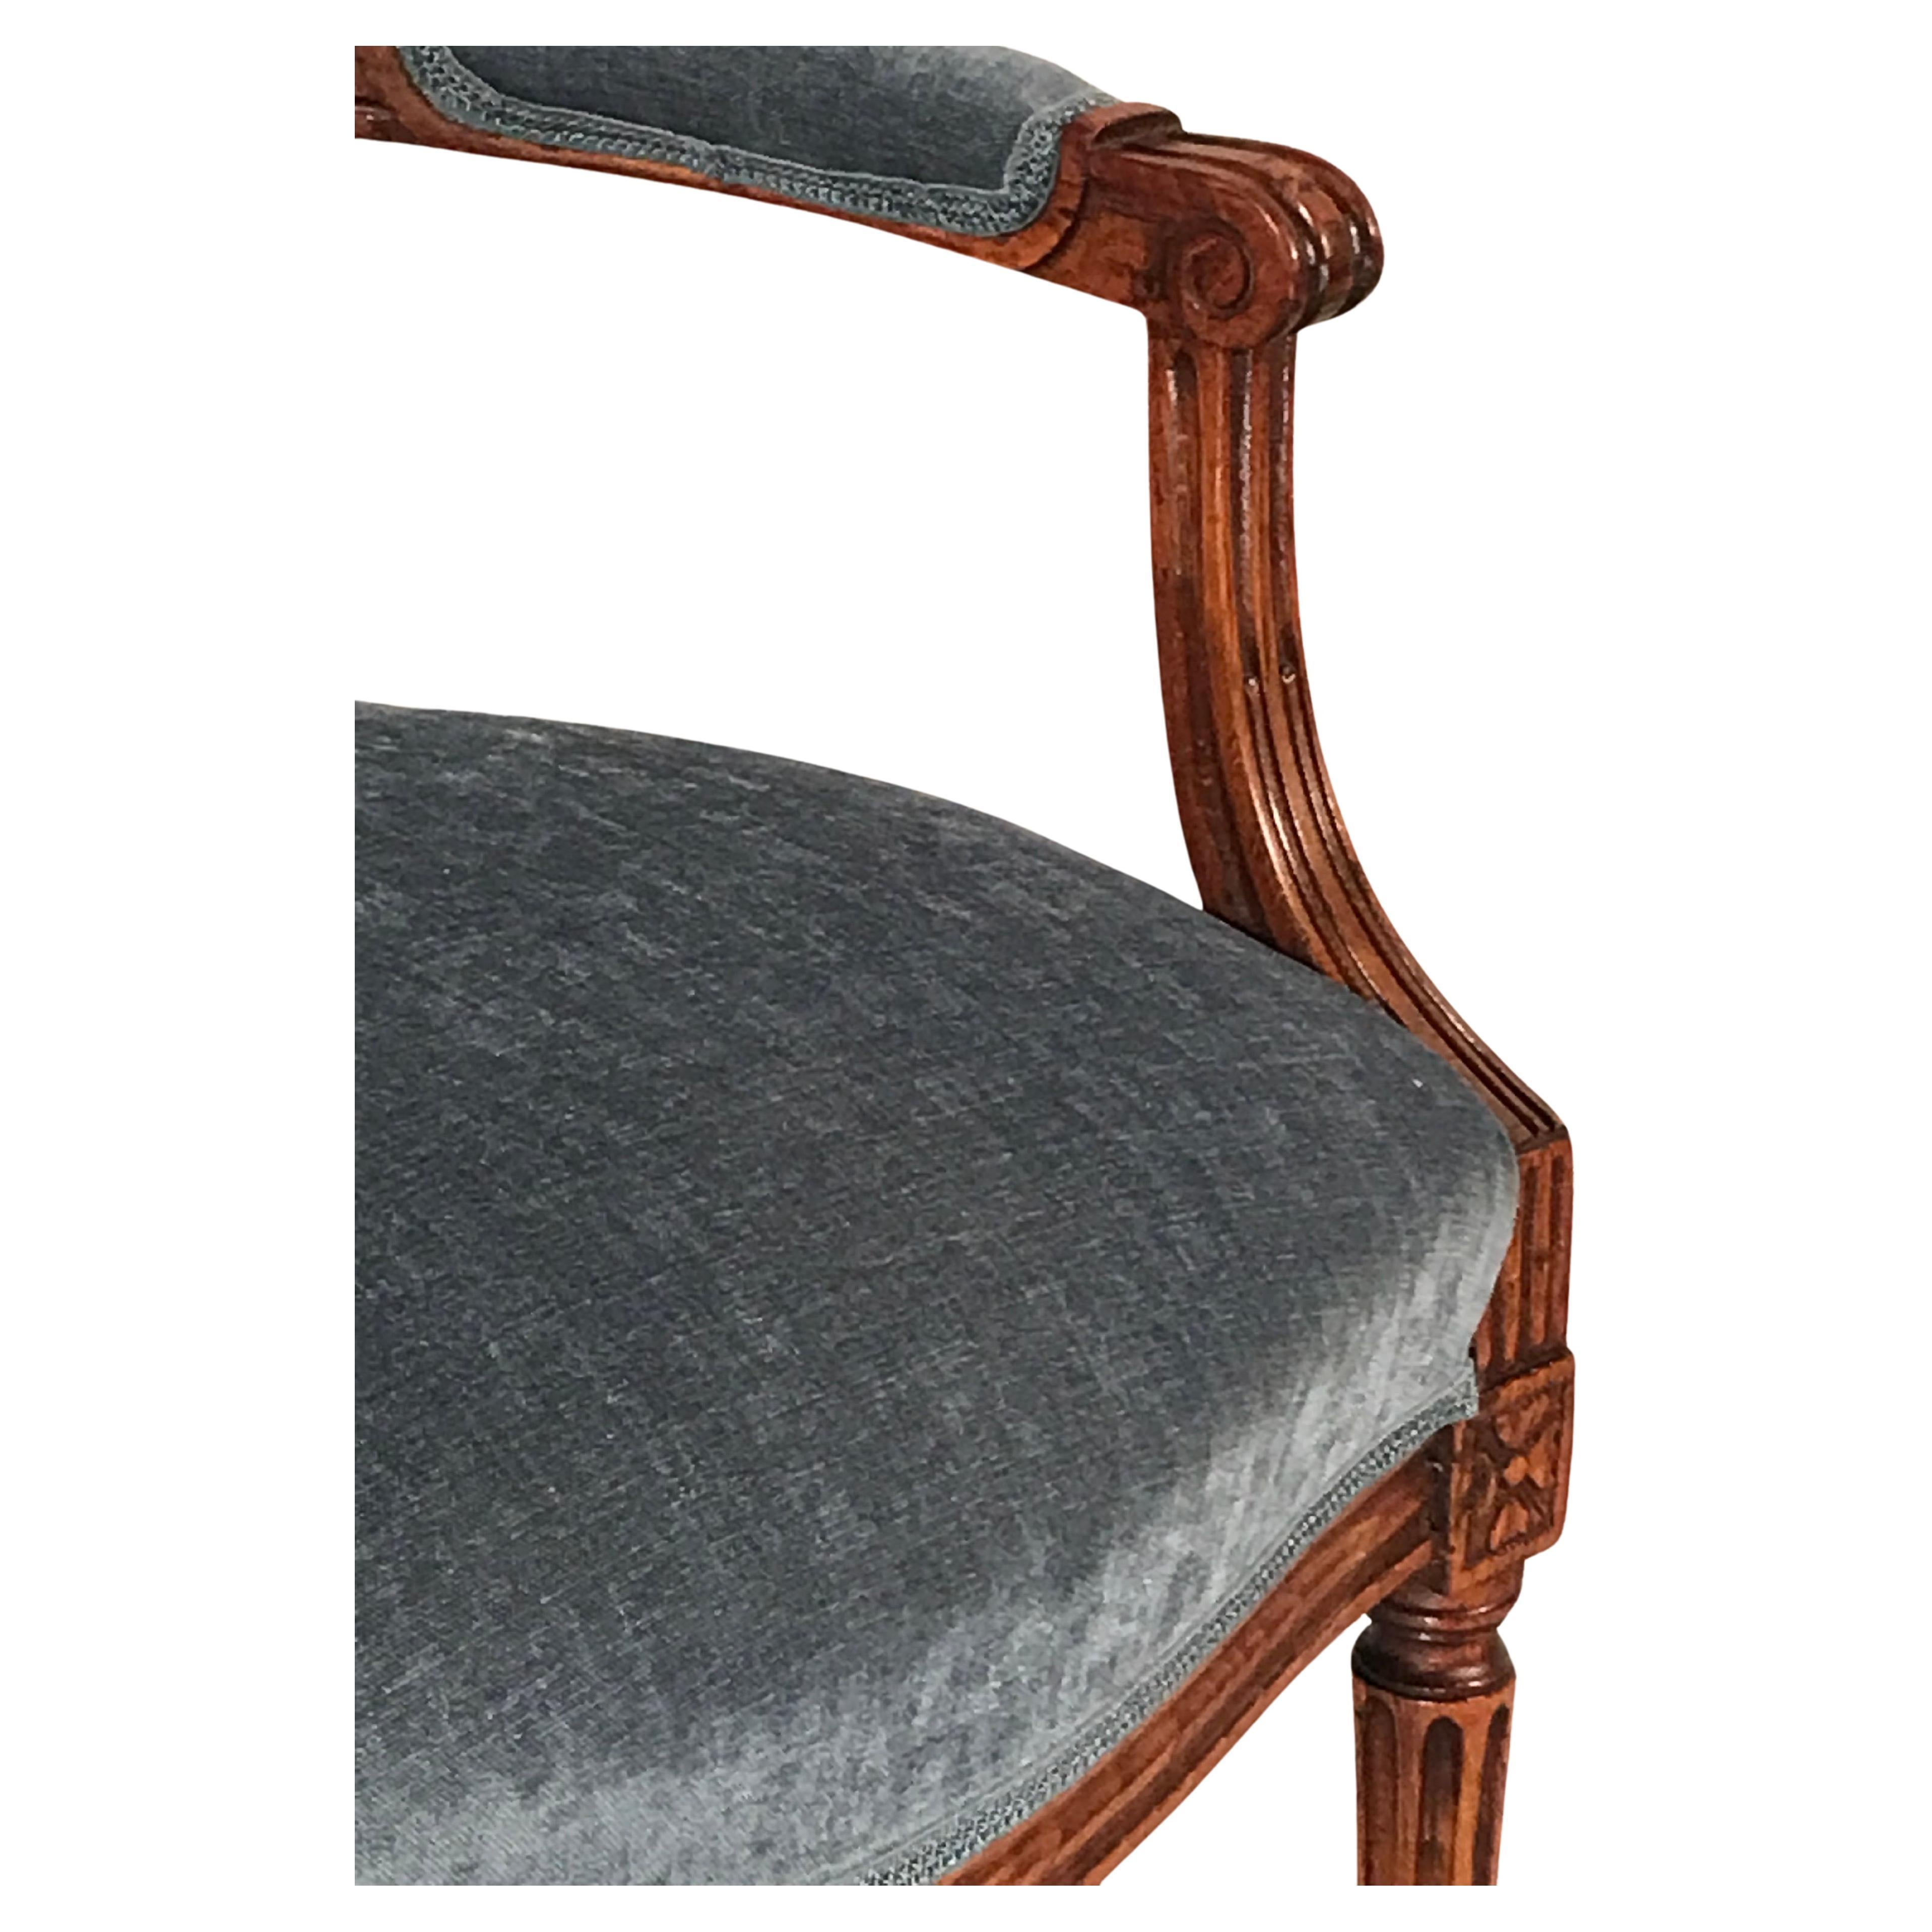 Dieses Paar originaler Louis XVI-Sessel stammt aus den Jahren 1780-1790 und kommt aus Frankreich. Die eleganten Stühle haben einen handgeschnitzten Buchenholzrahmen. Sie stehen auf kannelierten Beinen und haben schön geschnitzte Details an den